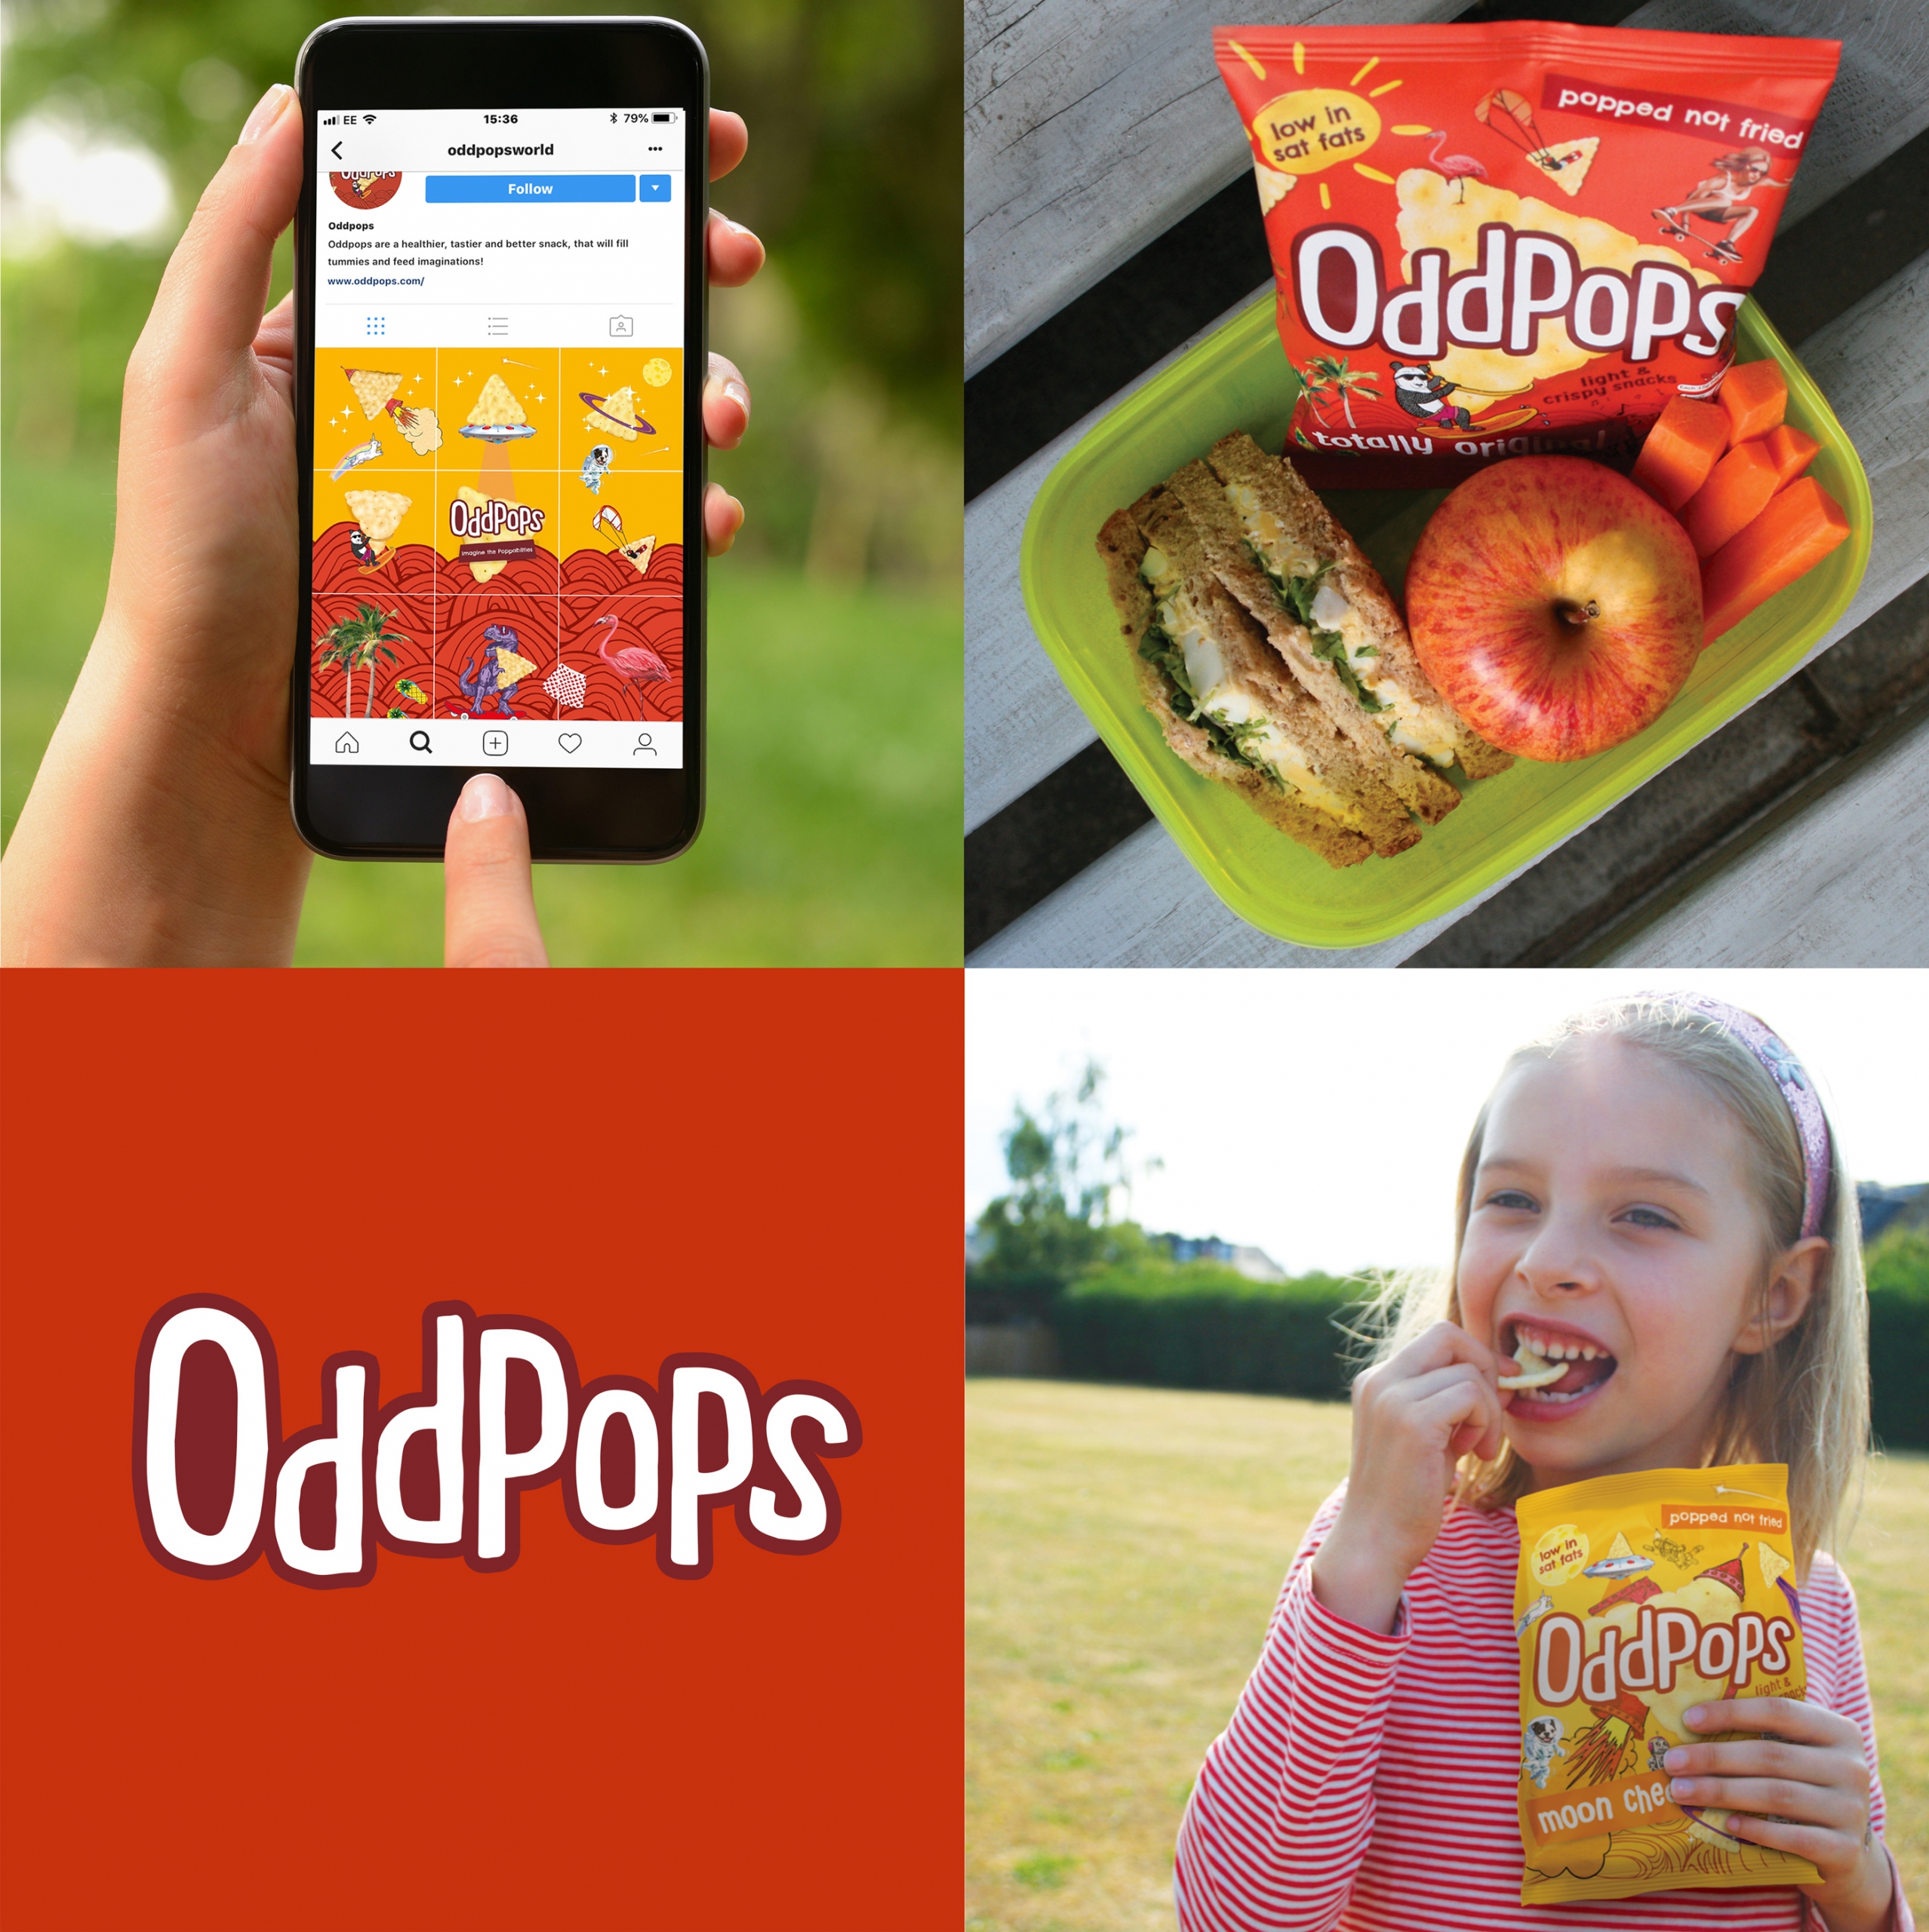 Lifestyle shots of Oddpops crisp branding